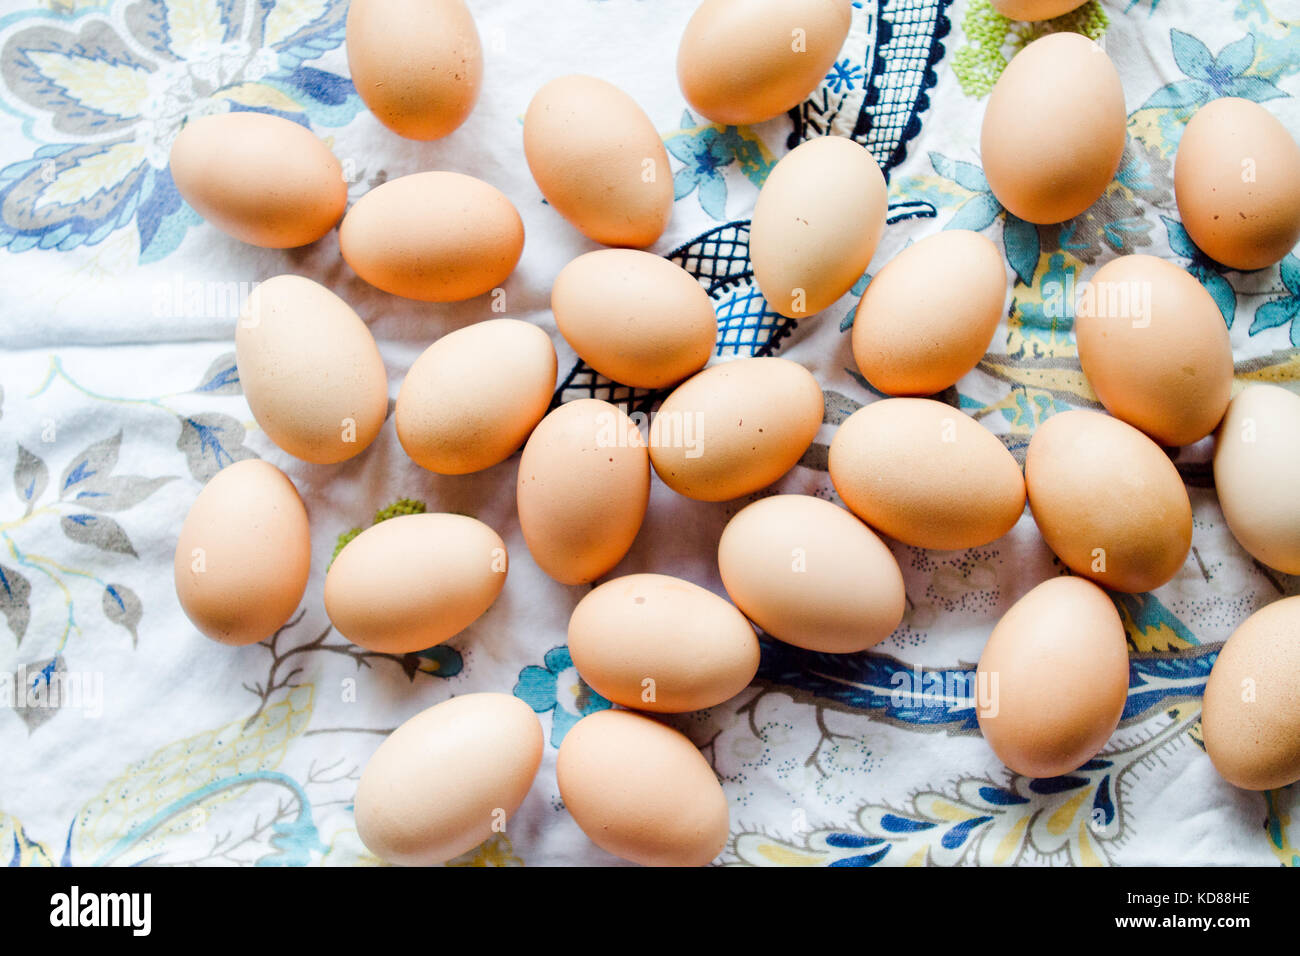 Farm fresh eggs on tea towel Stock Photo